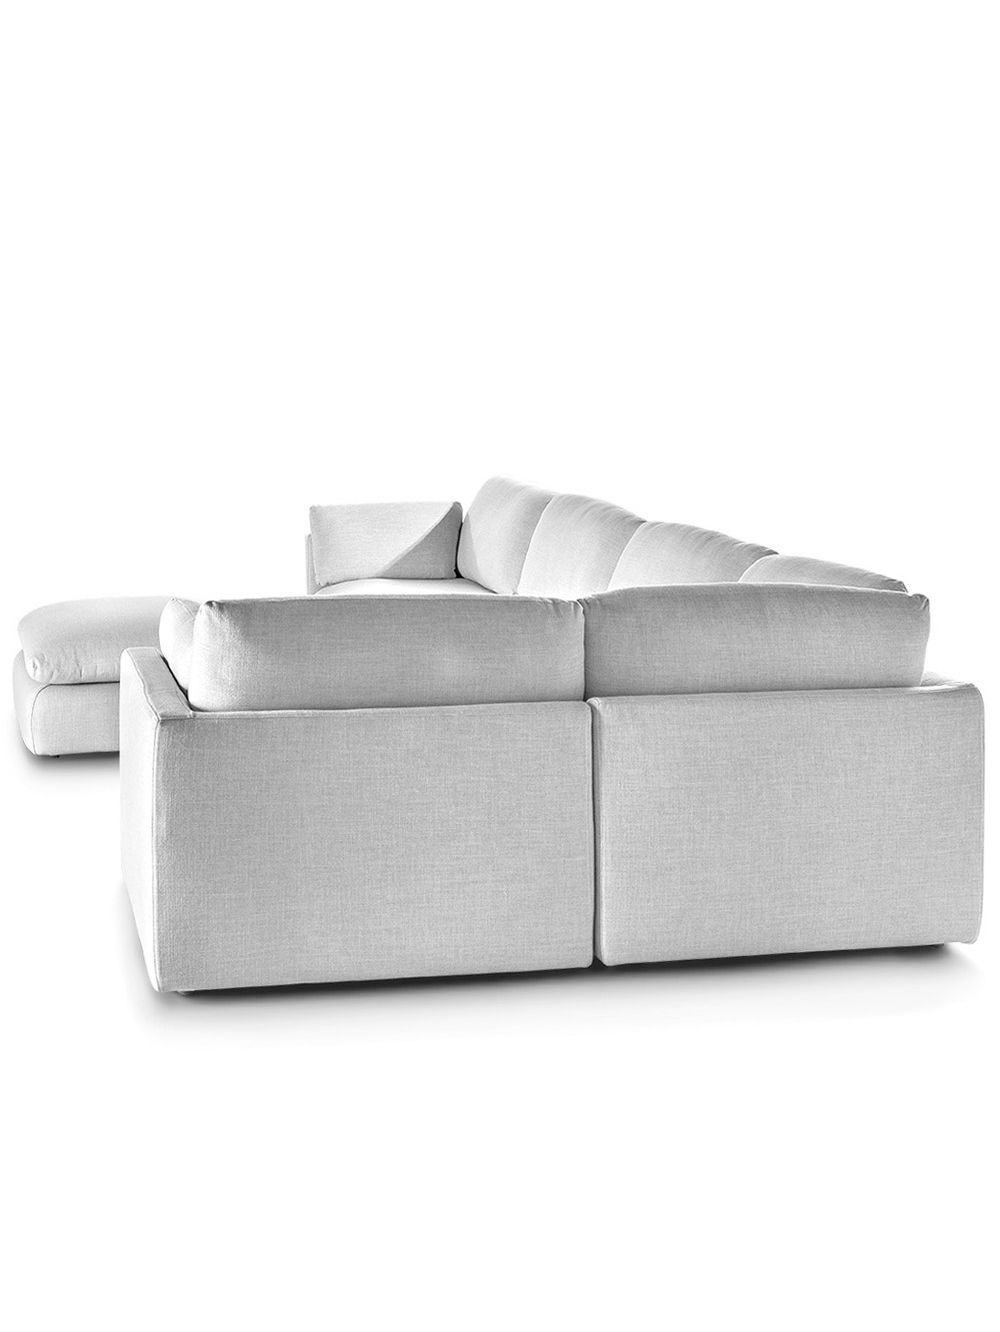 Sofa-en-ele-lino-blanco-SOFA-LA-JOYA-LINO-WHITE-Landmark-2